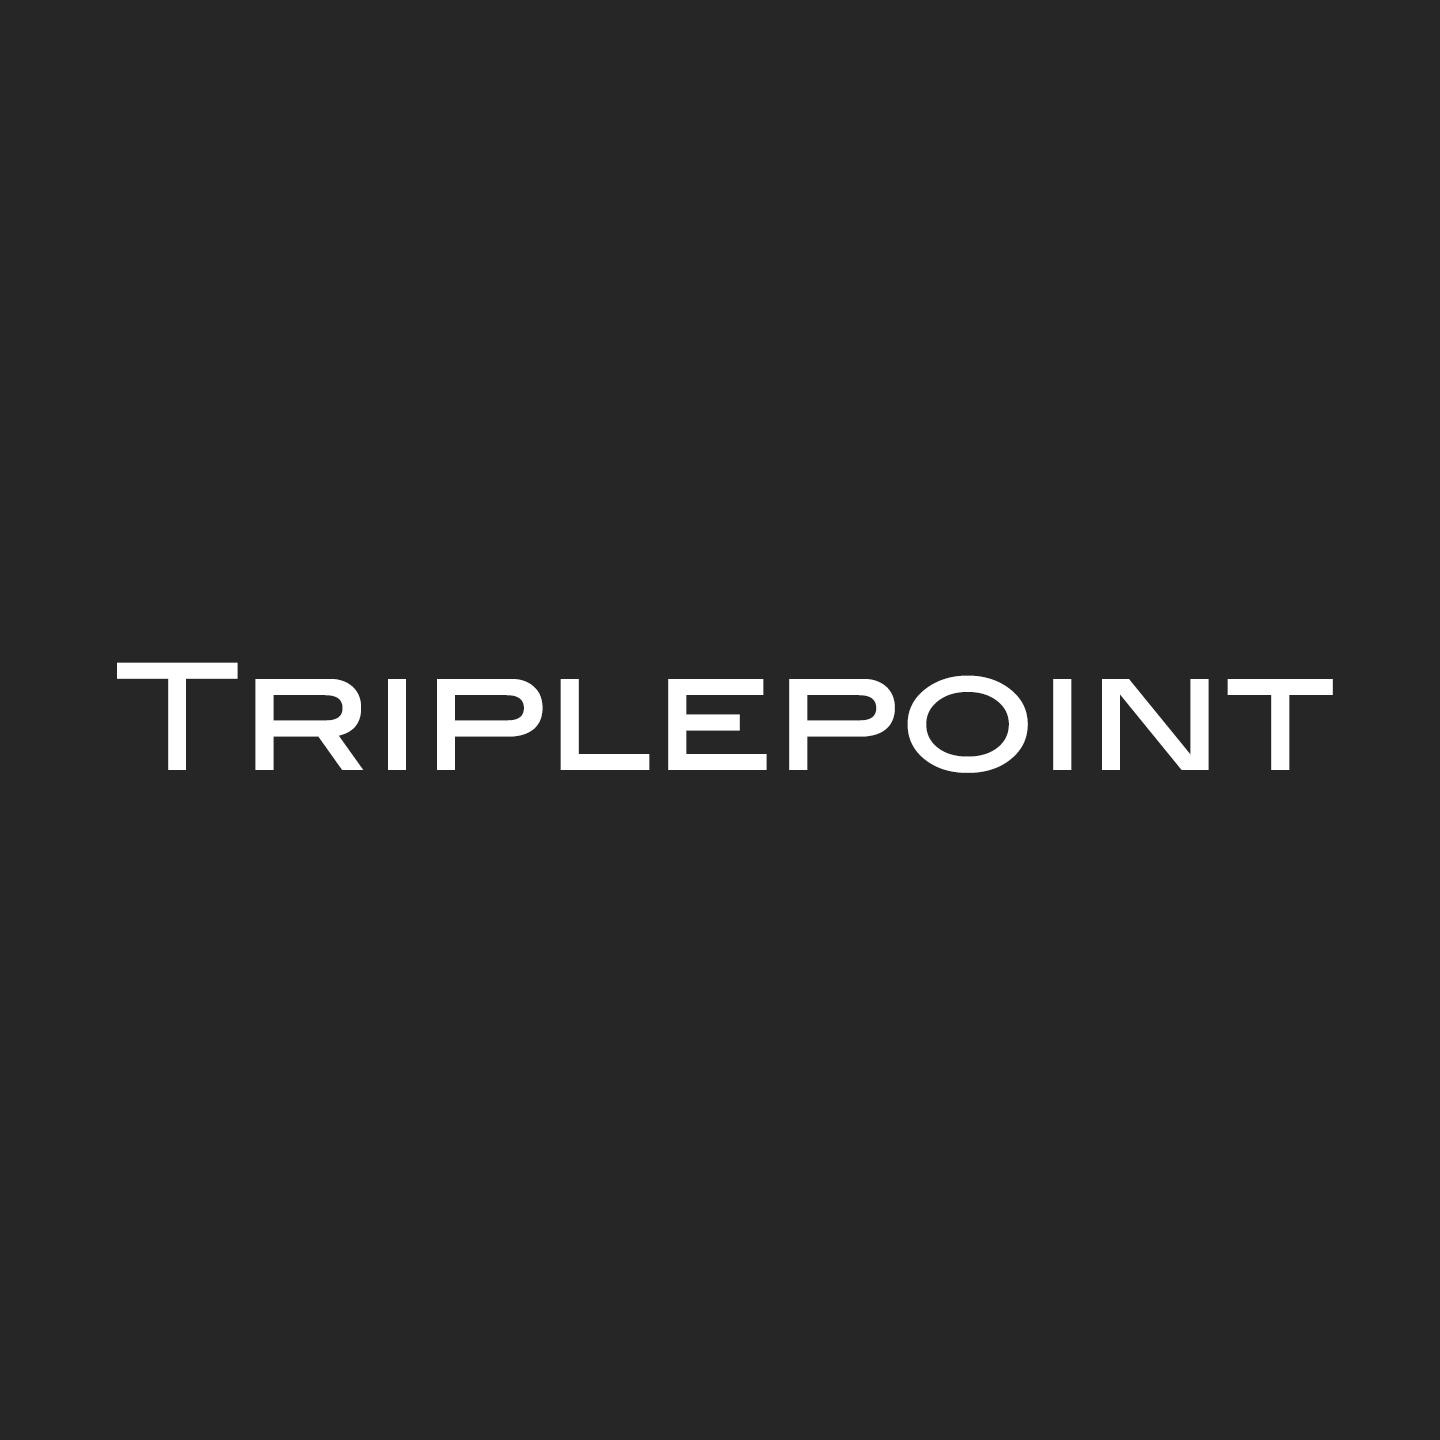 Triplepoint Is Fire, Vol. 2